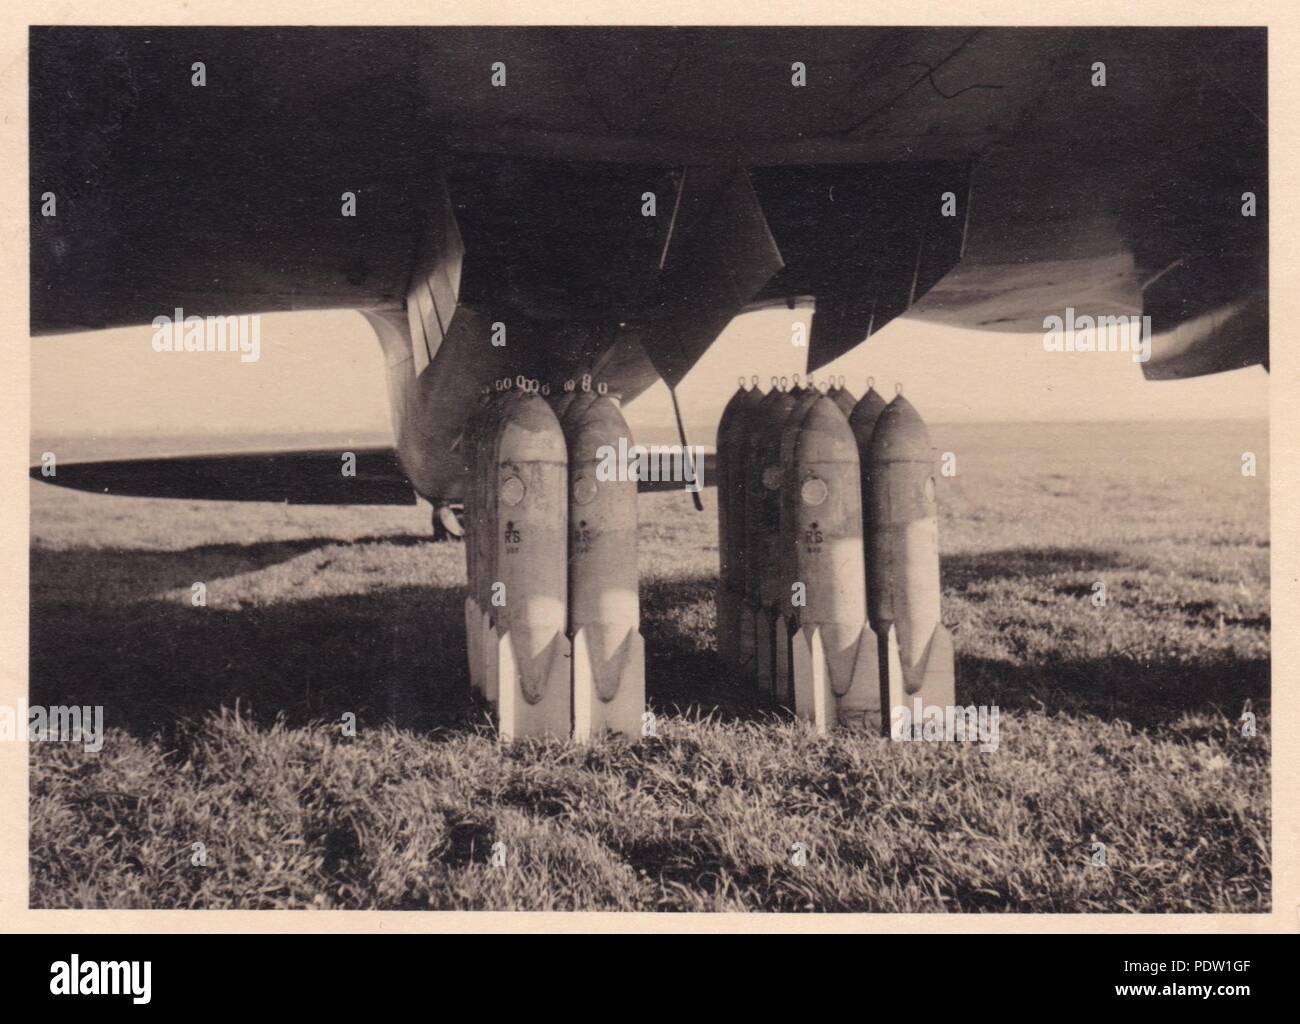 Bild aus dem Fotoalbum von Oberfeldwebel Karl gendner von 1. Staffel, Kampfgeschwader 40:Untertiteln einfach als "Nutzlast", Bomben warten in einer Heinkel He 111 E-1 der 8./KG 355 in Giebelstadt Airfield, Bayern 1938 geladen werden. Stockfoto